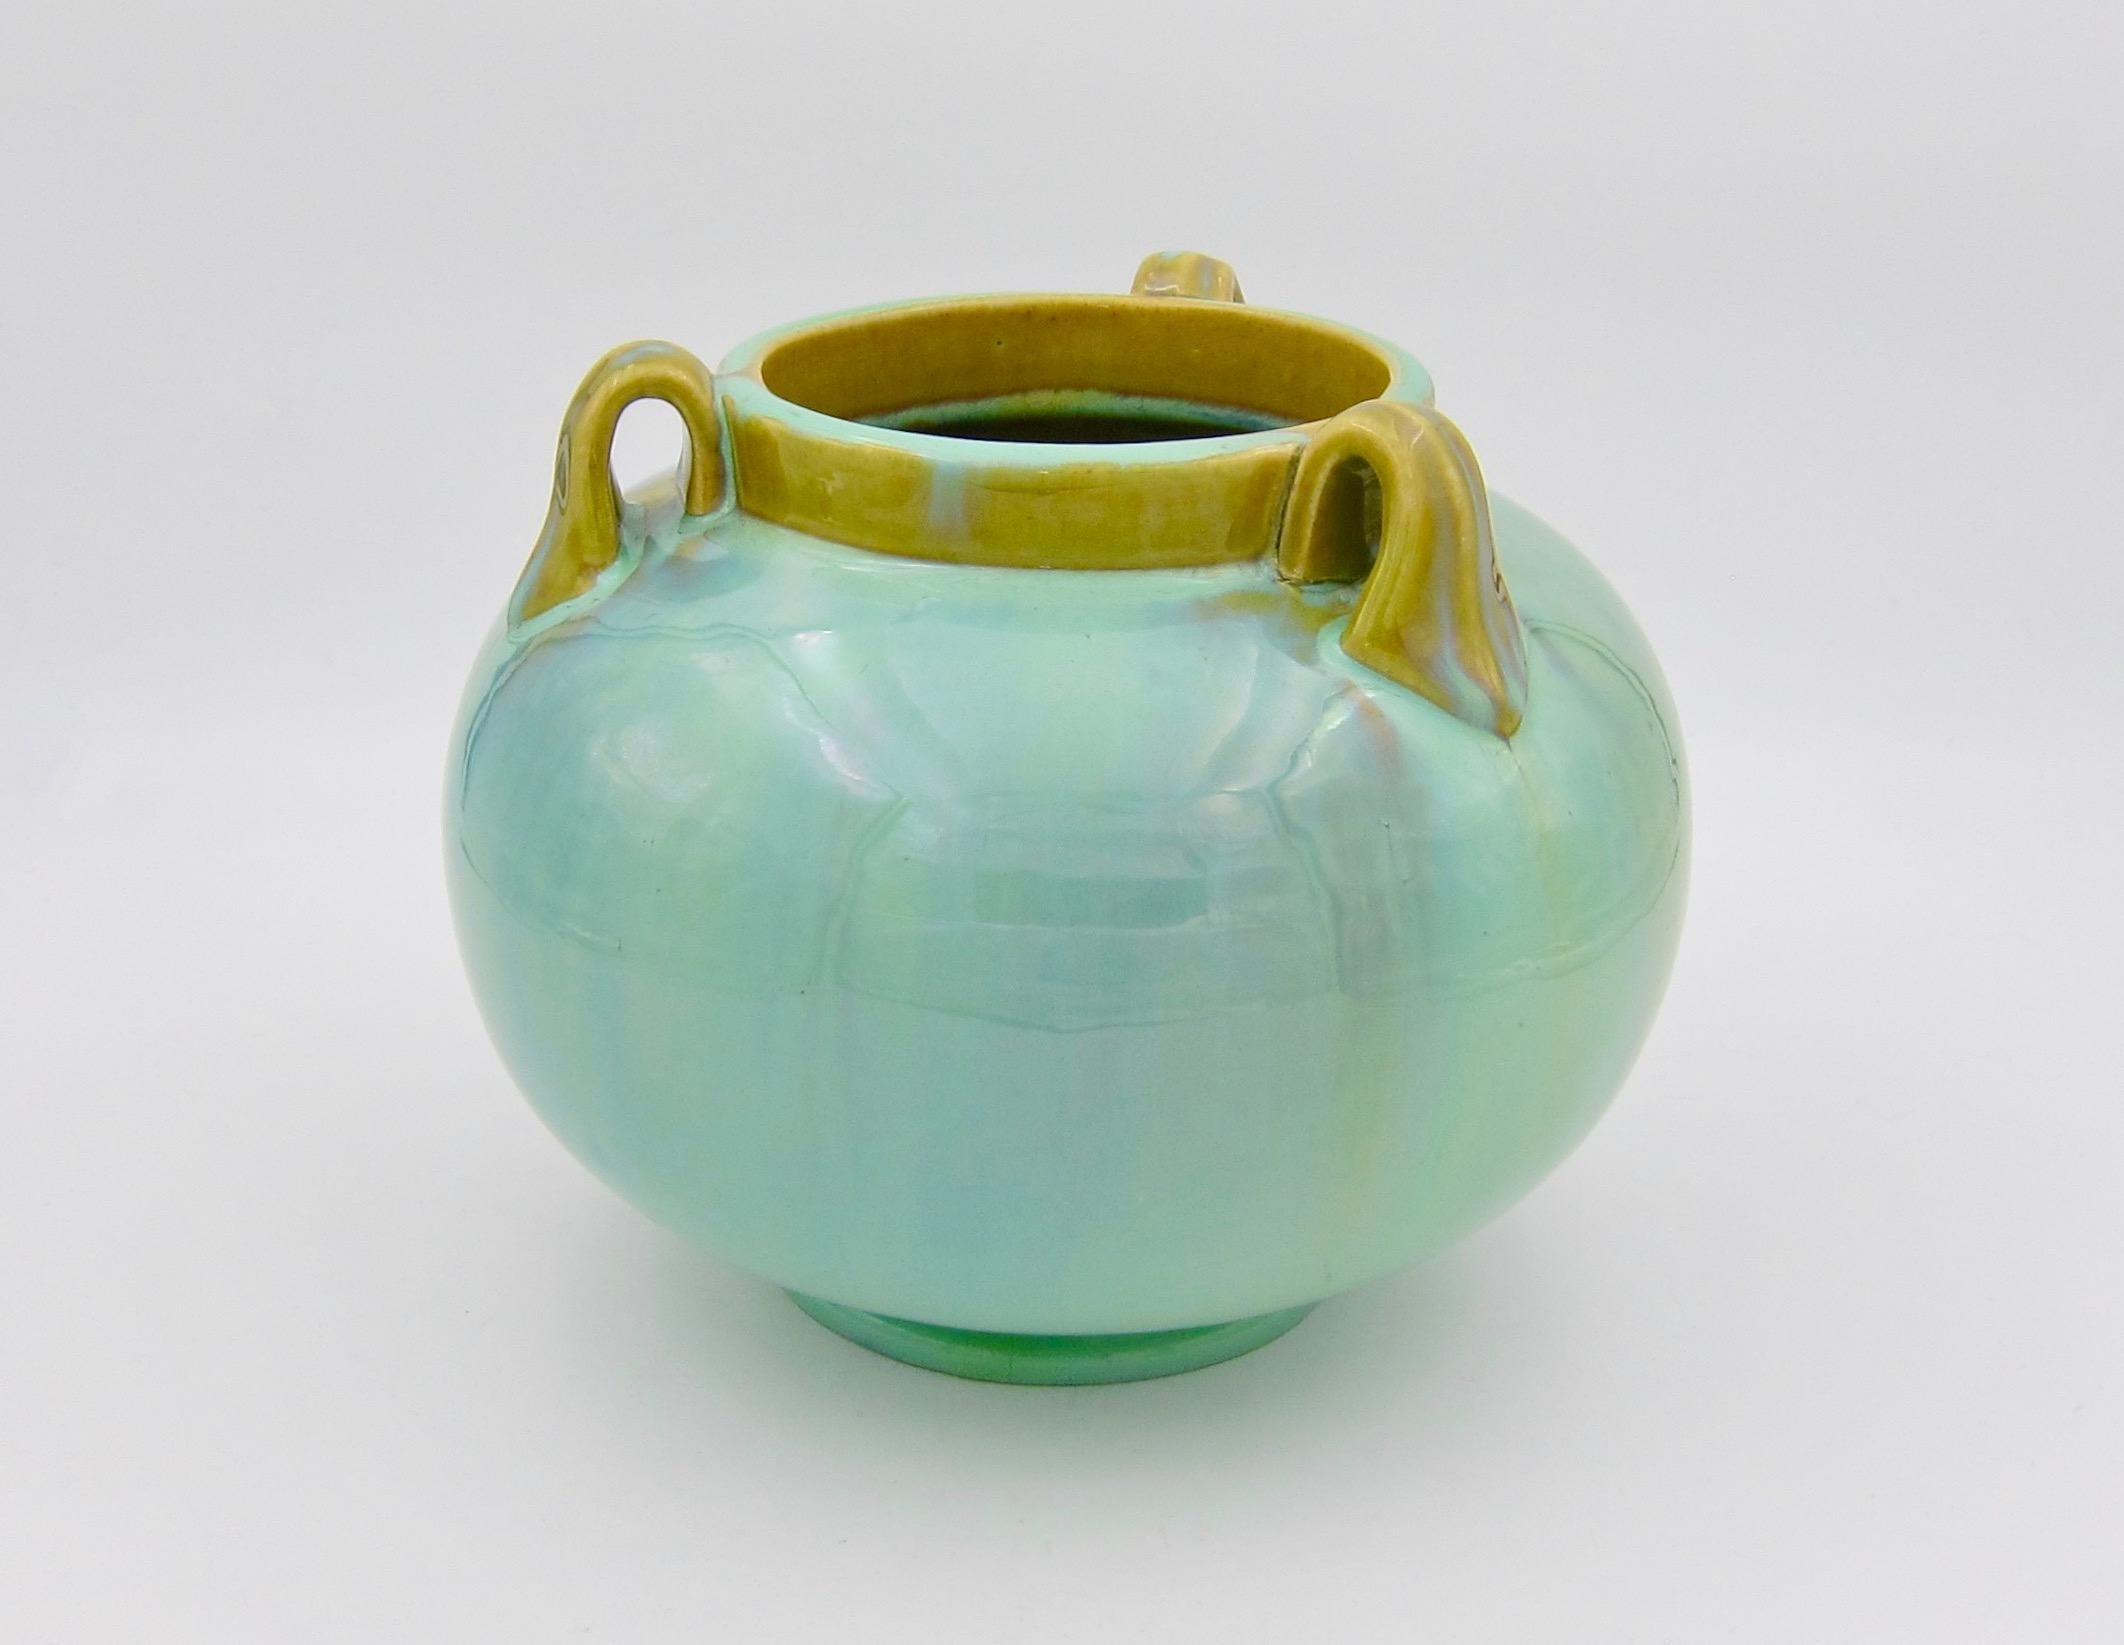 Vintage Fulper Pottery Three Handled Vase with a Flambé Glaze 1